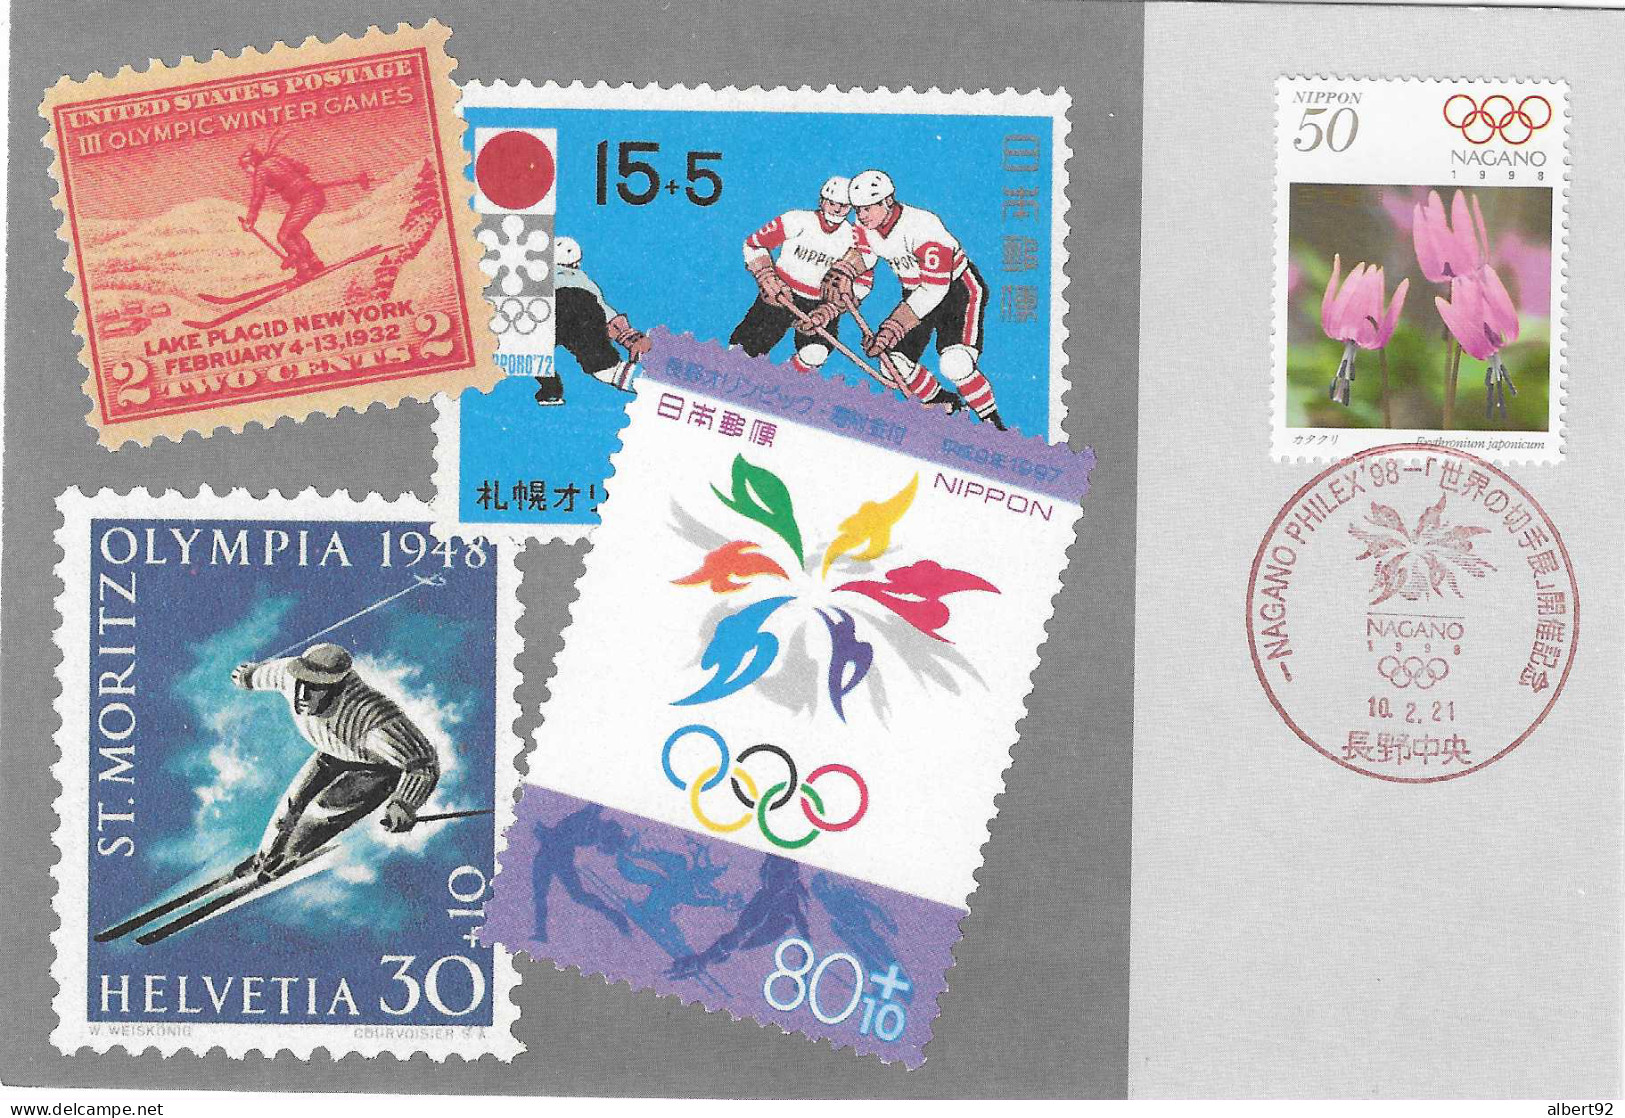 1998 Jeux Olympiques D'Hiver De Nagano: Exposition Olympique Nagano Philex 98 - Hiver 1998: Nagano